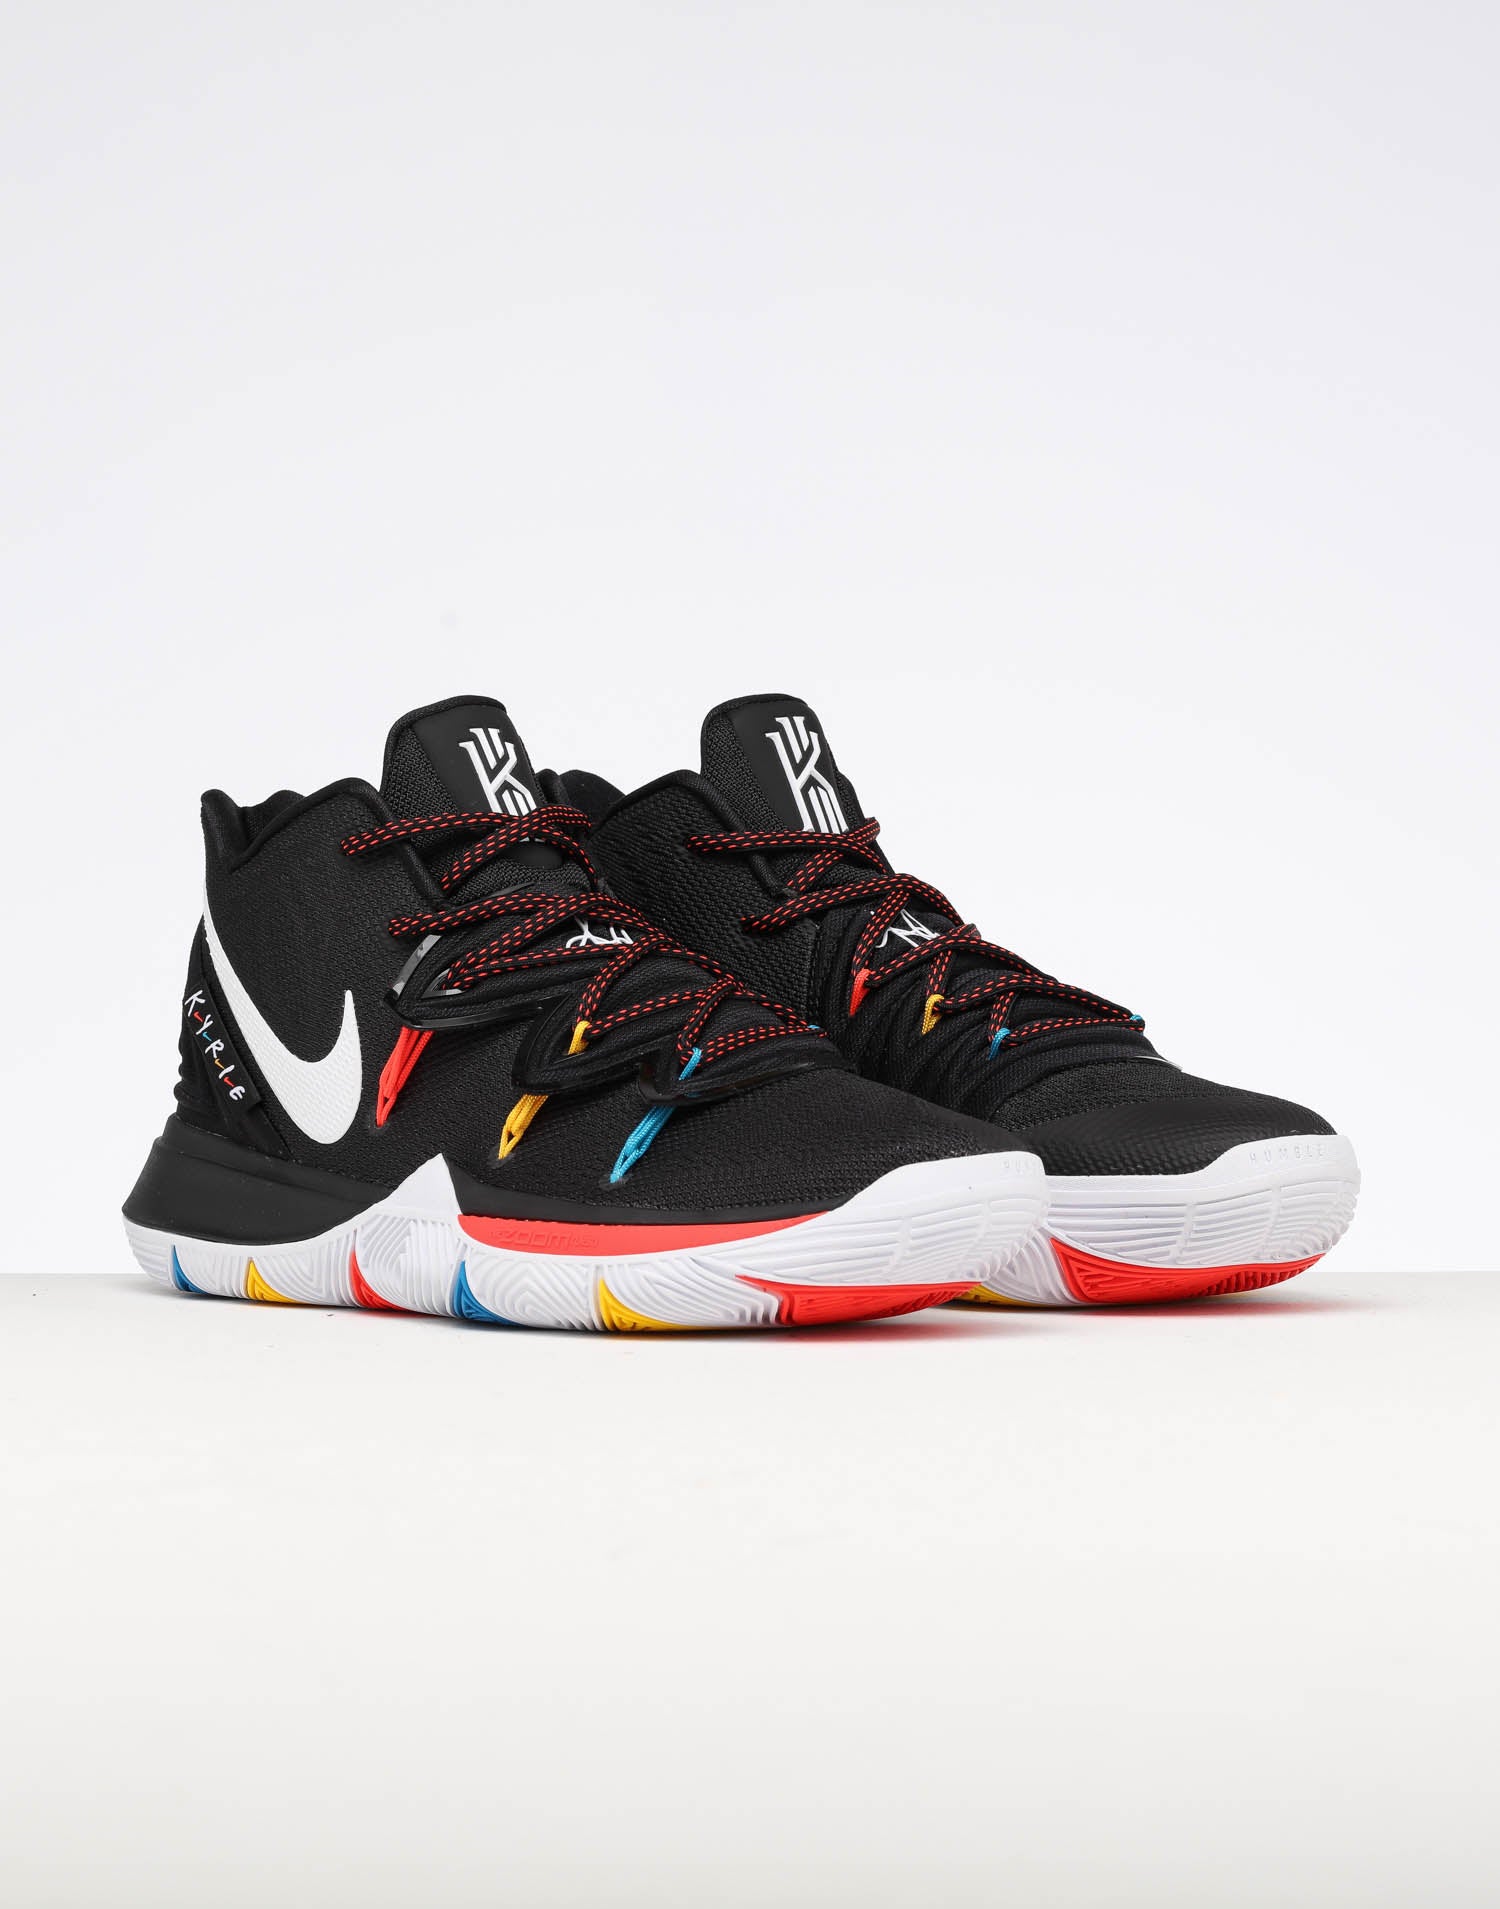 Jual Sepatu Basket Nike Kyrie 5 Rainbow Neon Sole Black